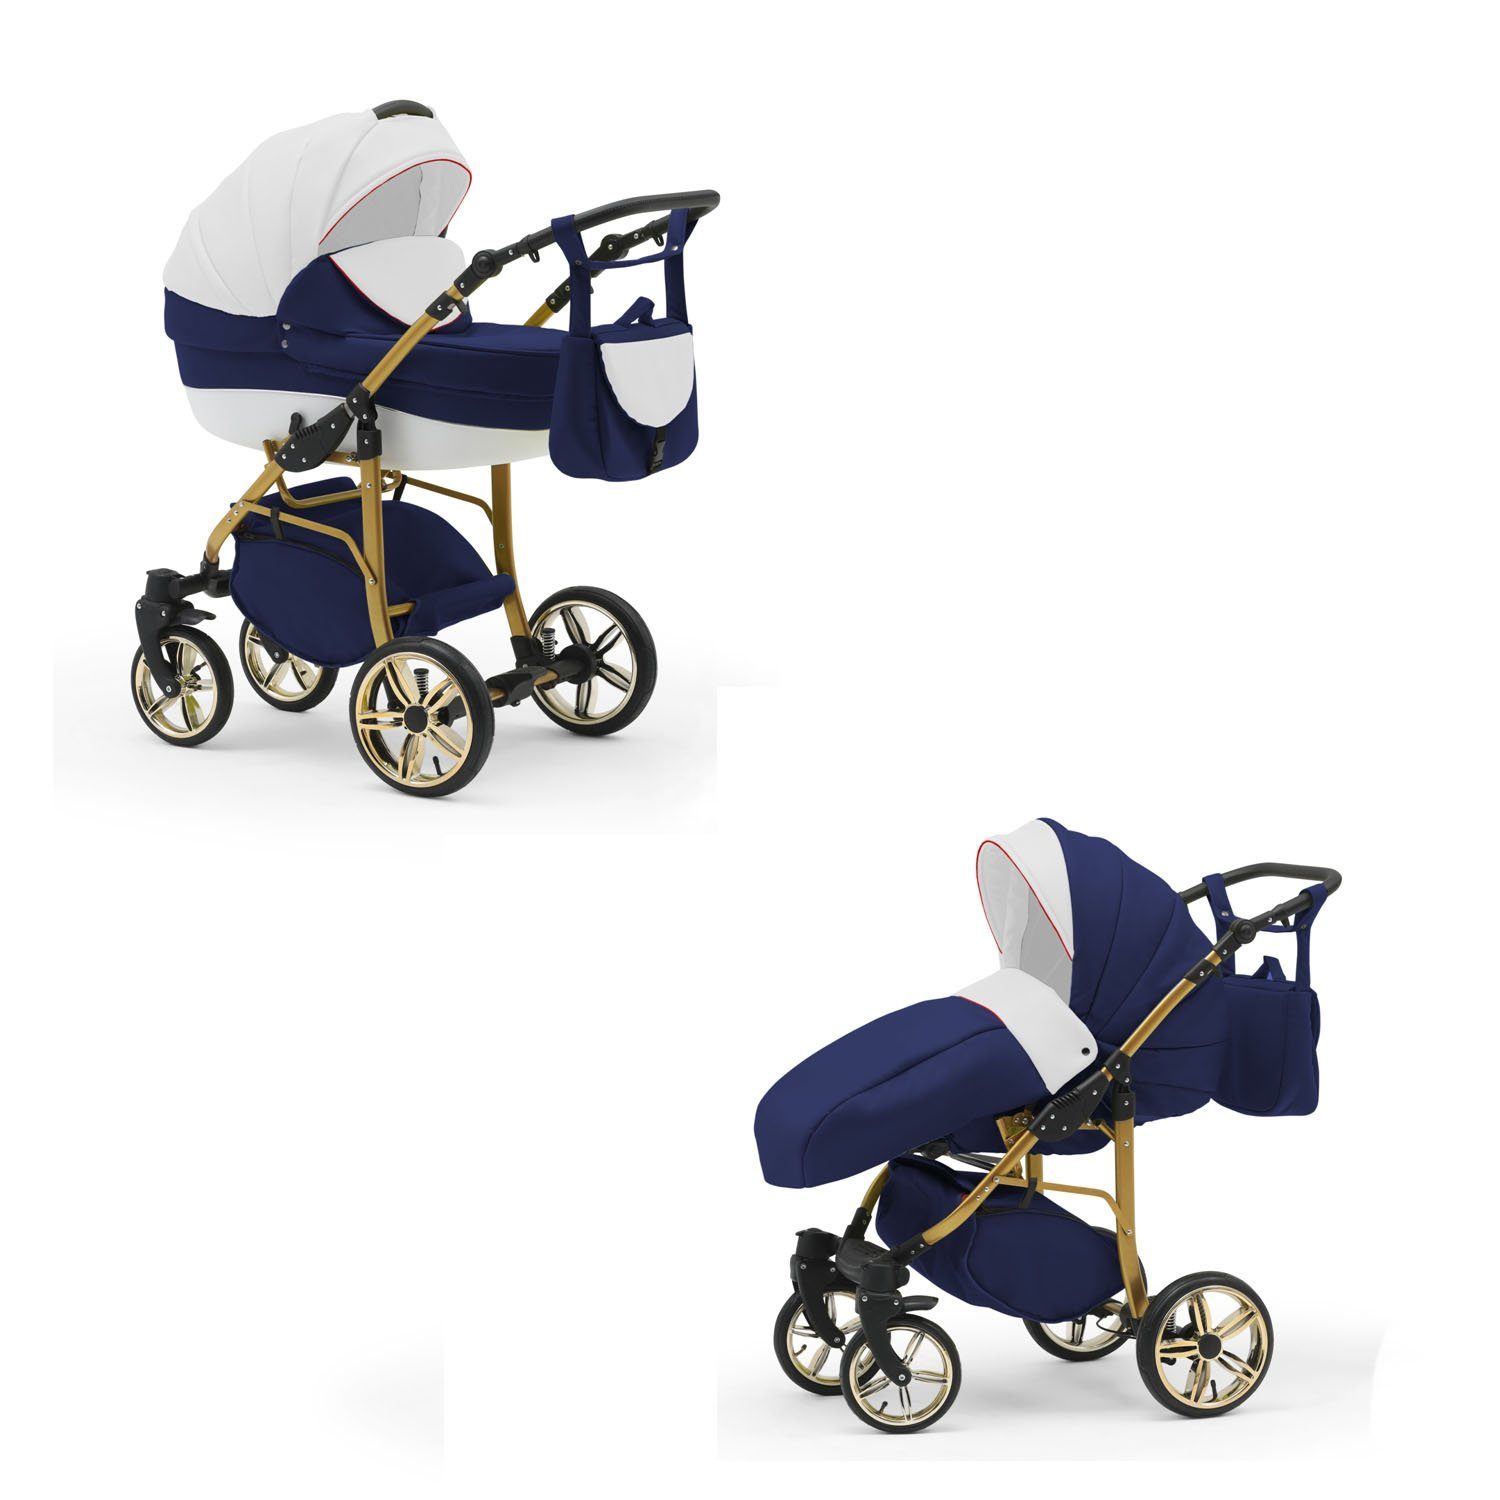 Farben Gold 13 in Teile babies-on-wheels 2 46 Weiß-Navy-Weiß Kinderwagen-Set in - 1 Cosmo Kombi-Kinderwagen -